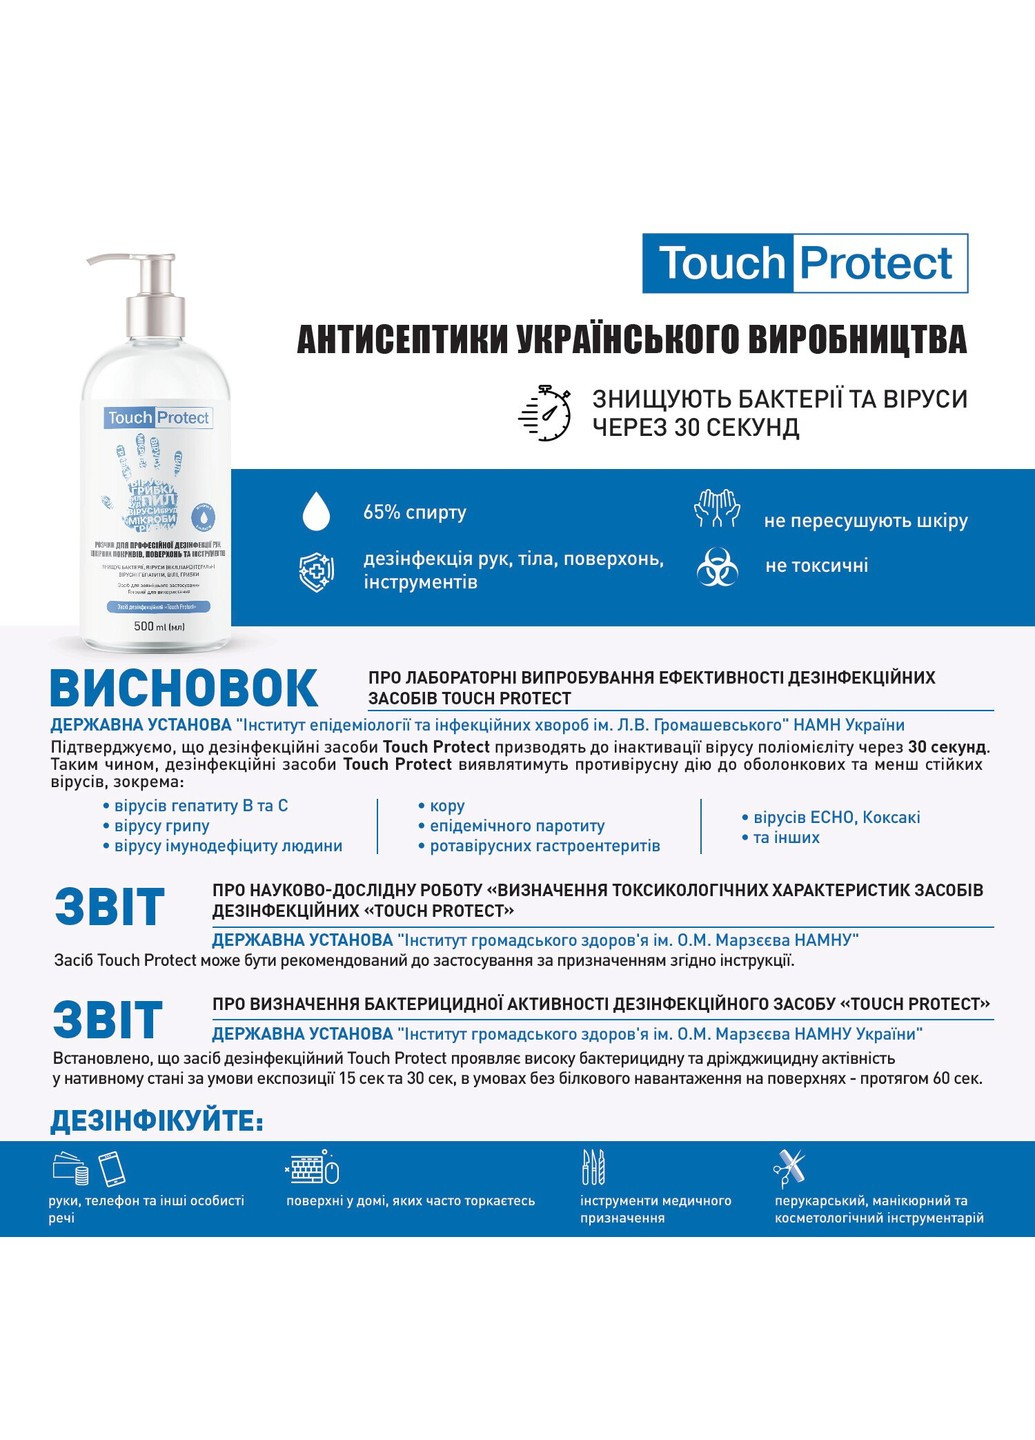 Антисептик розчин для дезінфекції рук, тіла, поверхонь та інструментів 10 л Touch Protect (255417762)